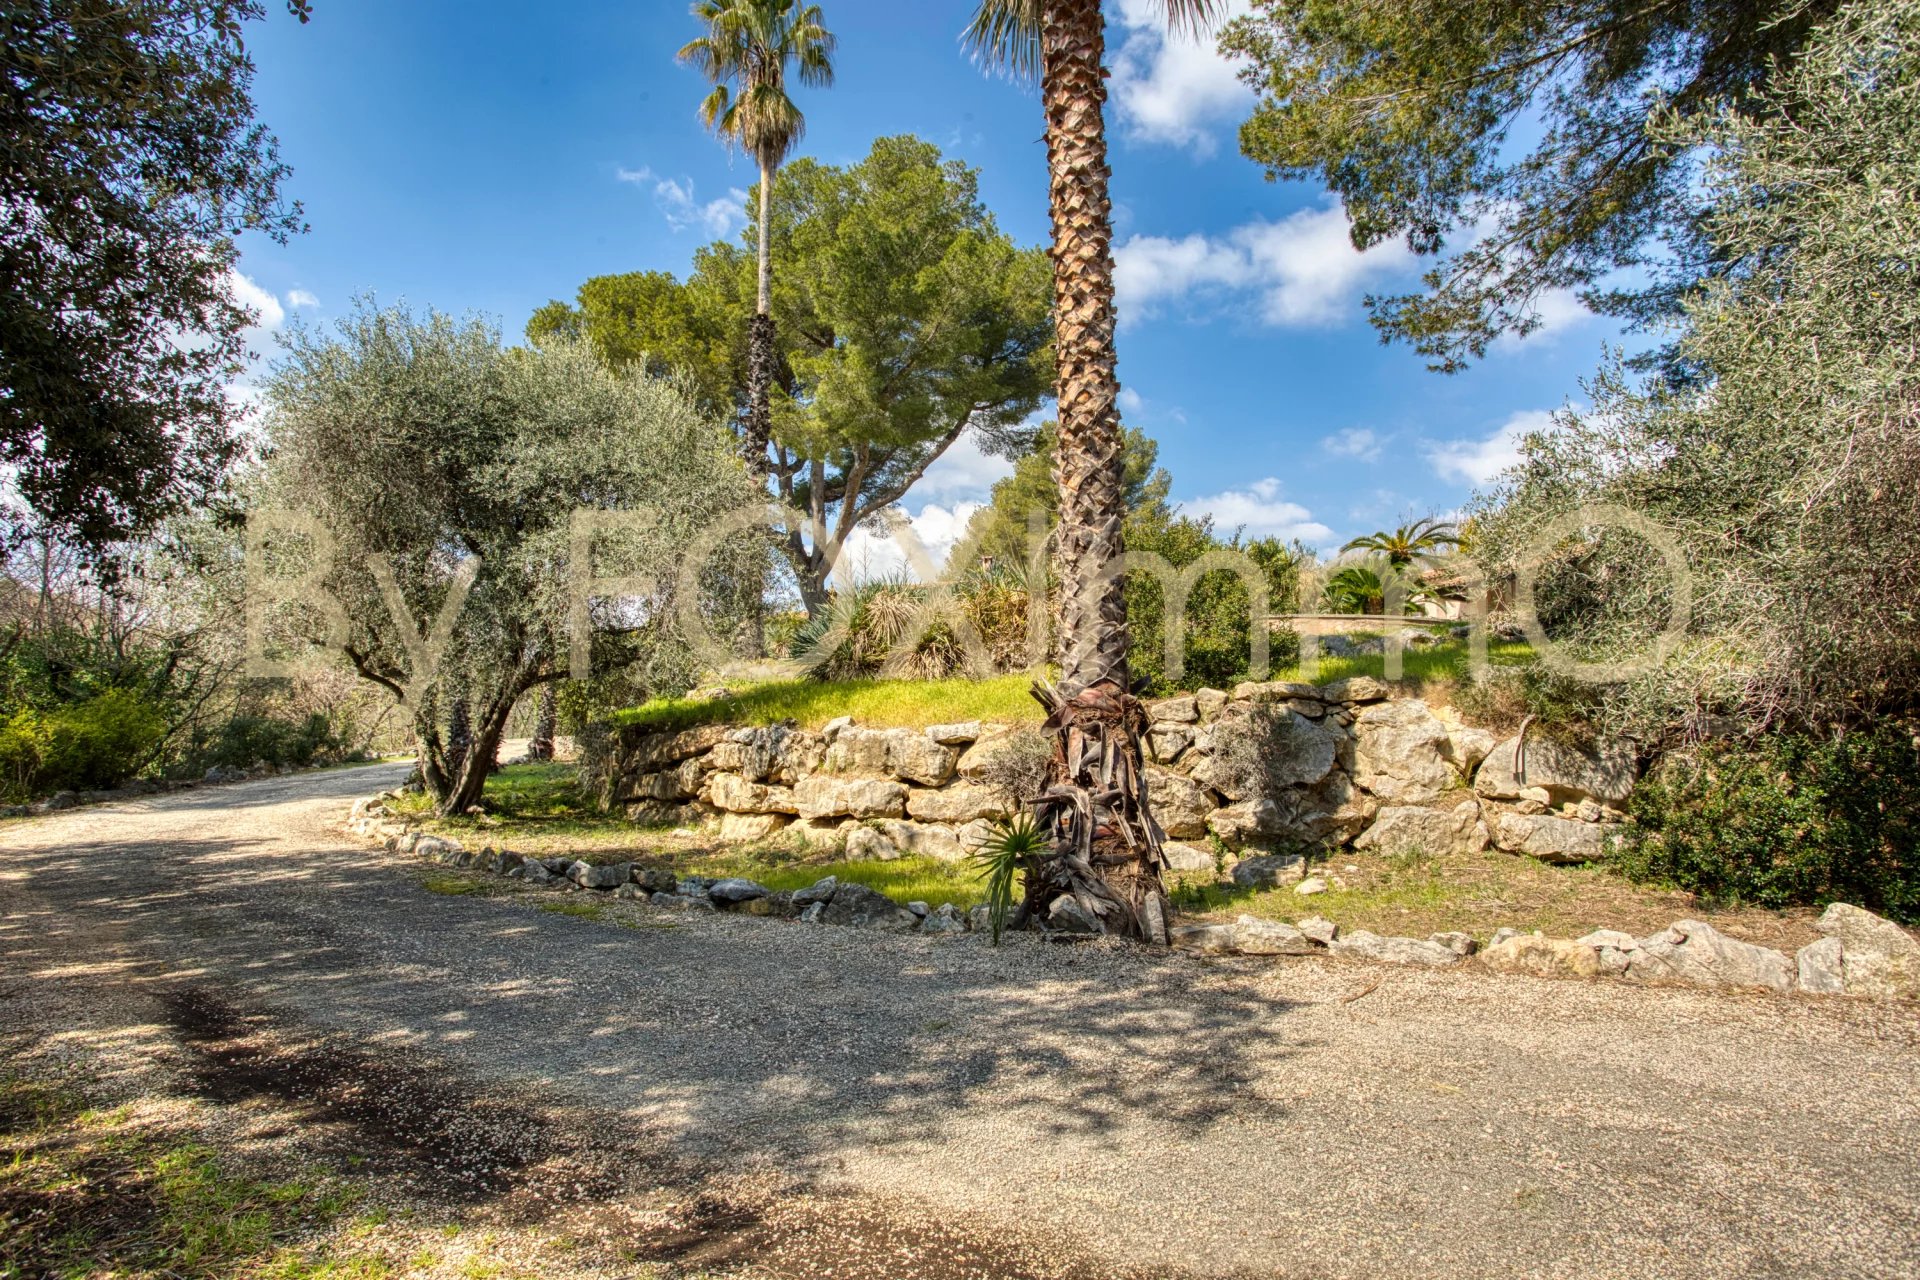 Sur la Côte d'Azur, au calme, grande propriété de plain pied, ,piscine, terrasses, parking, garage, position dominante